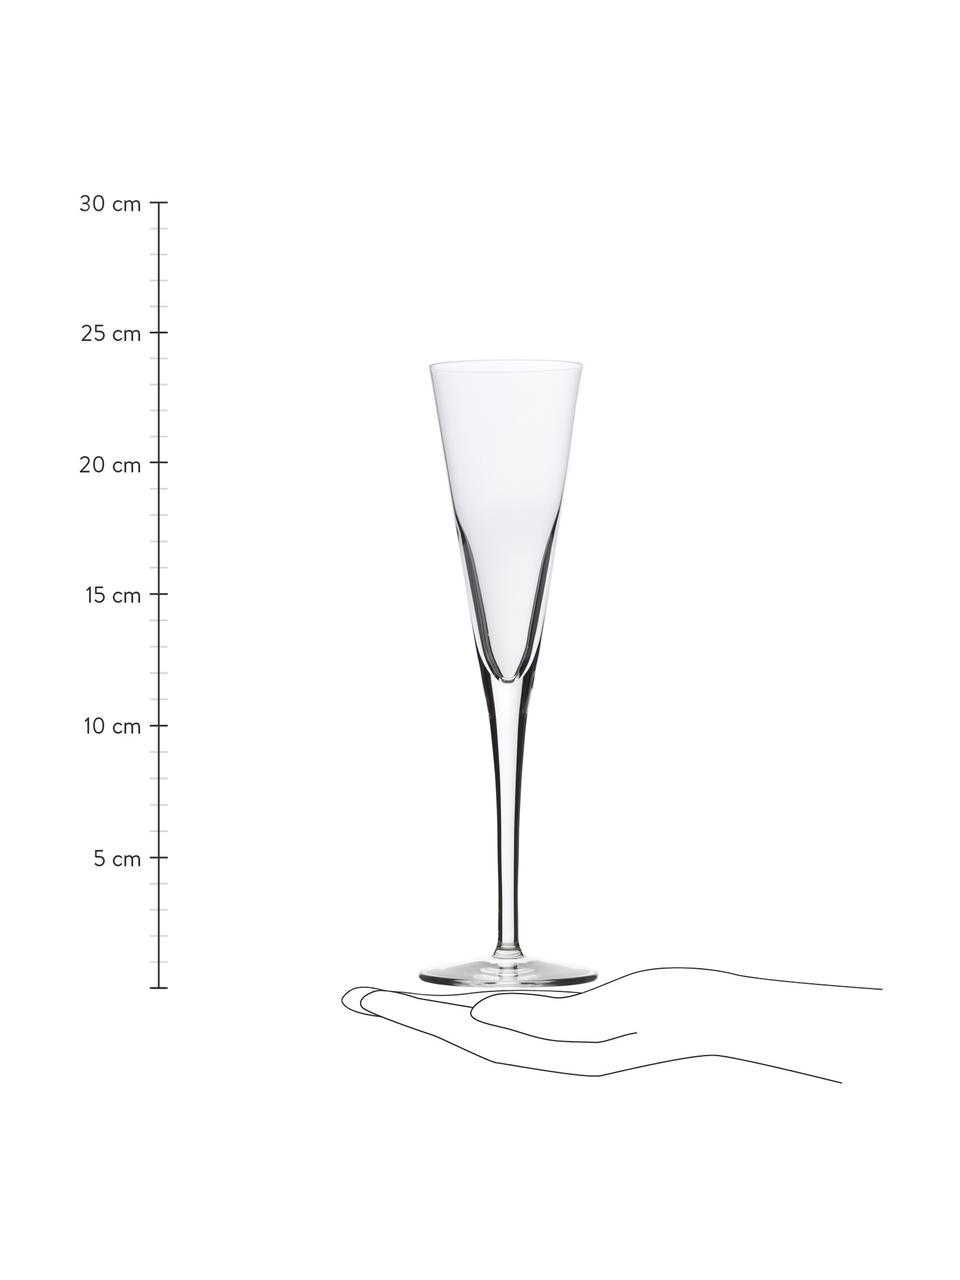 Kieliszek do szampana ze szkła kryształowego Event, 6 szt., Szkło kryształowe, Transparentny, Ø 7 x W 24 cm, 160 ml